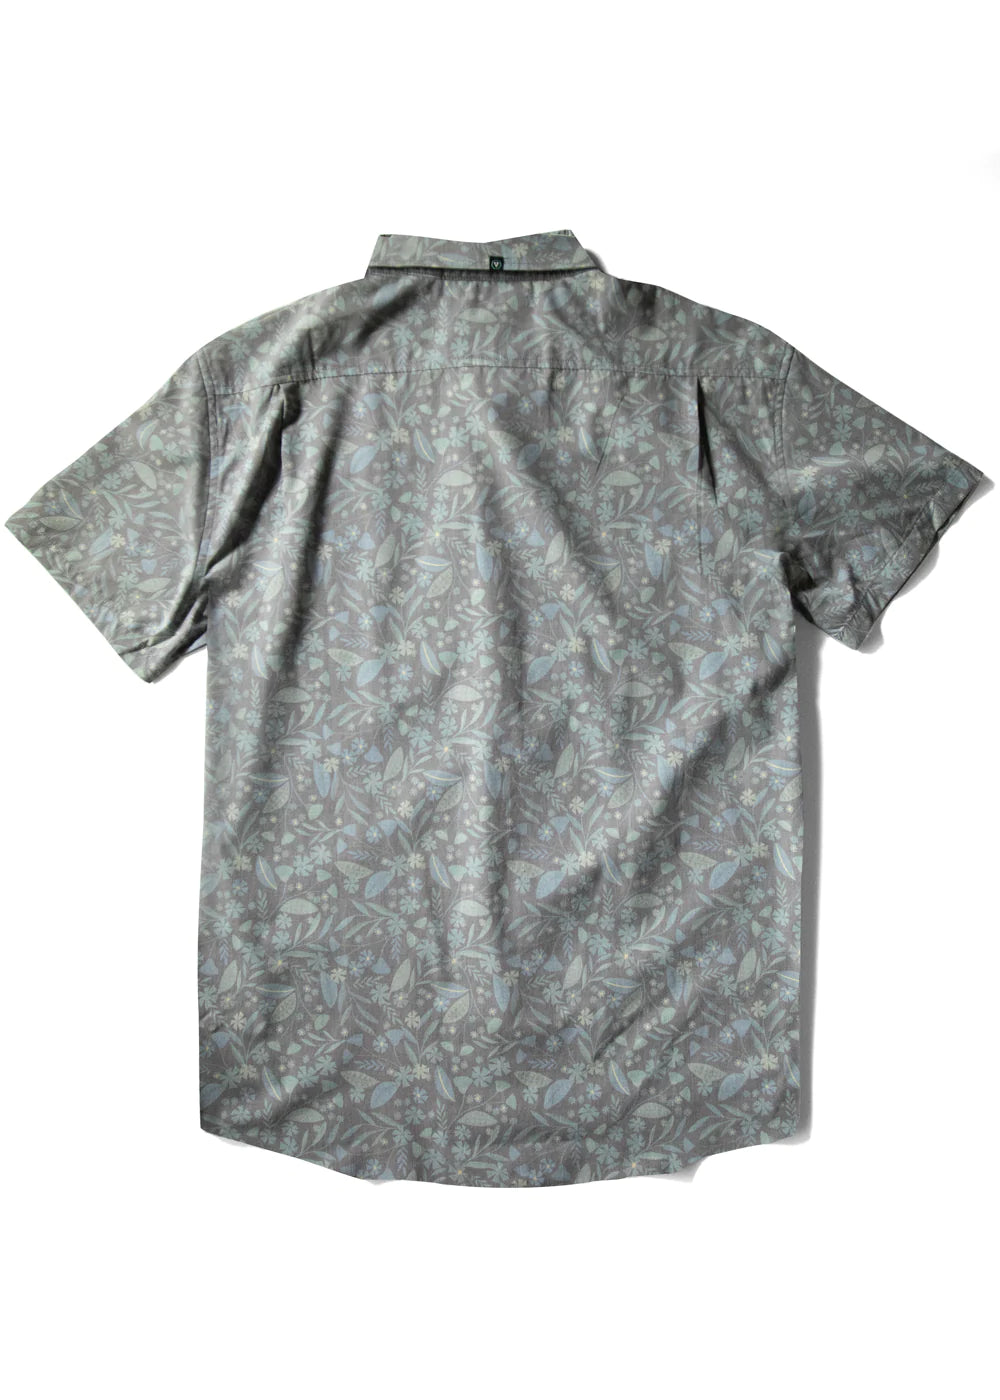 Gardena Eco SS Shirt - Vissla